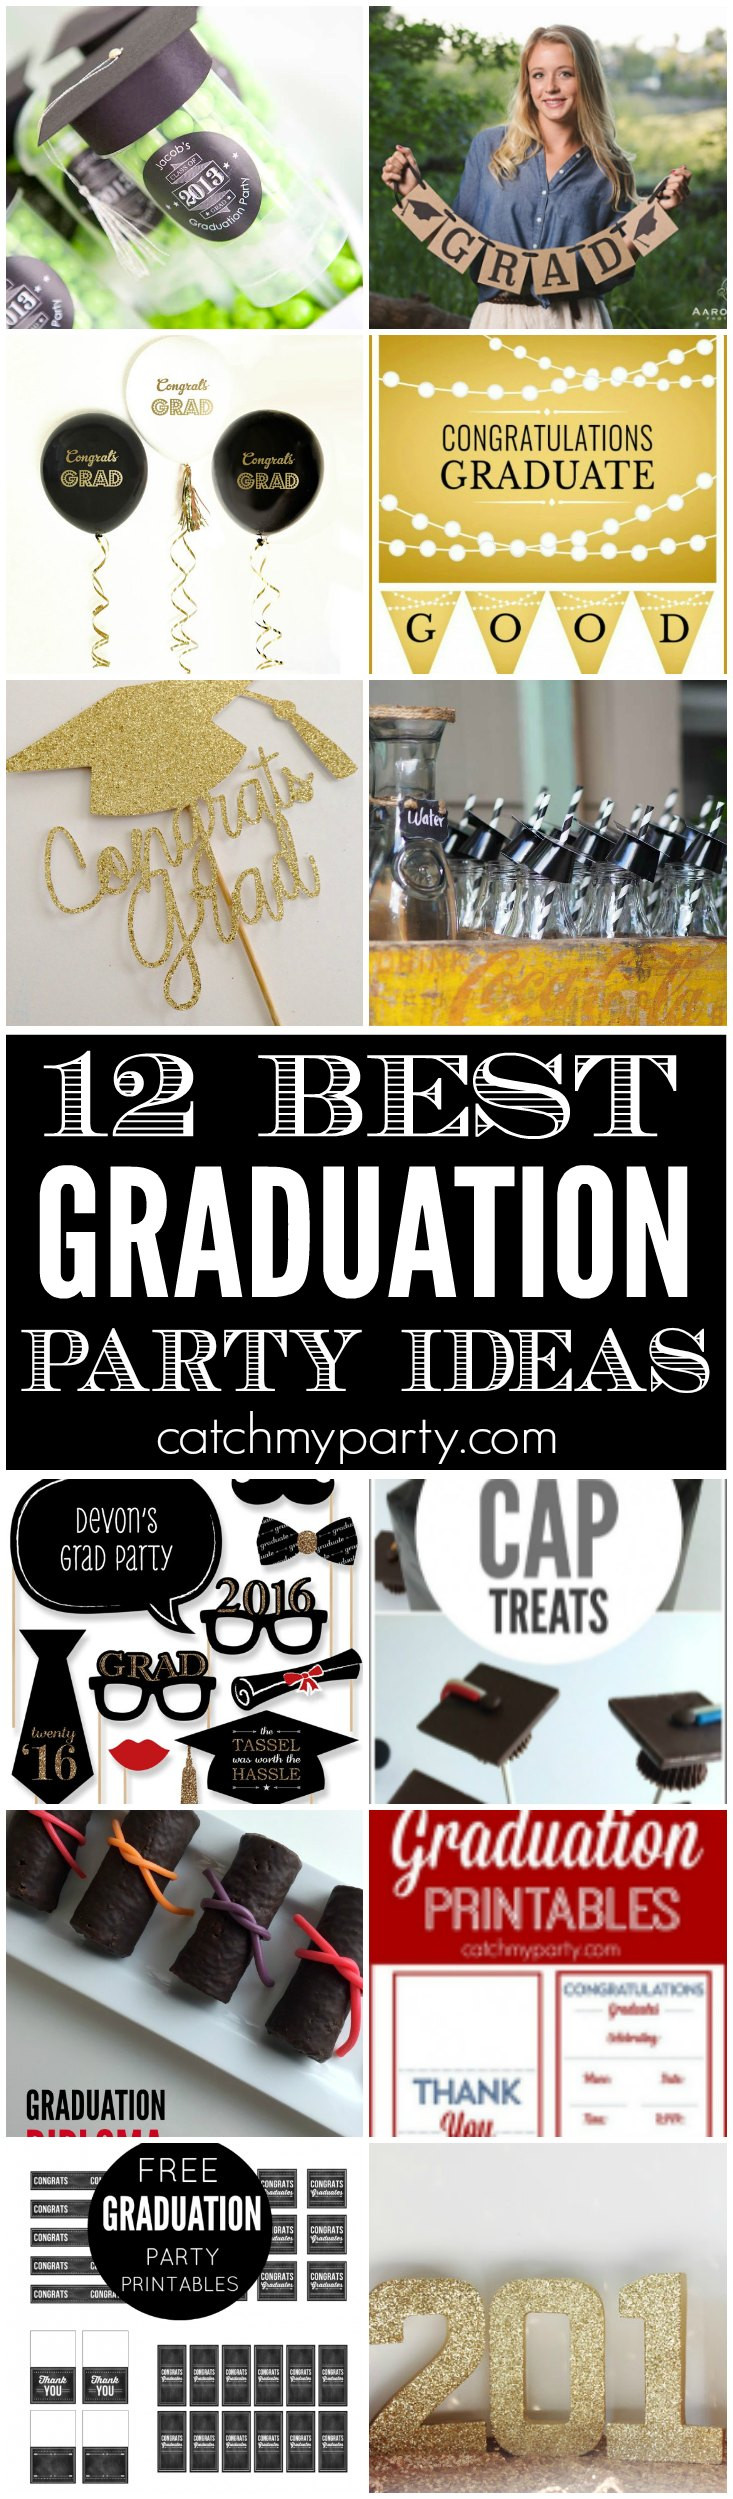 Best Graduation Party Ideas
 12 Best Graduation Party Ideas